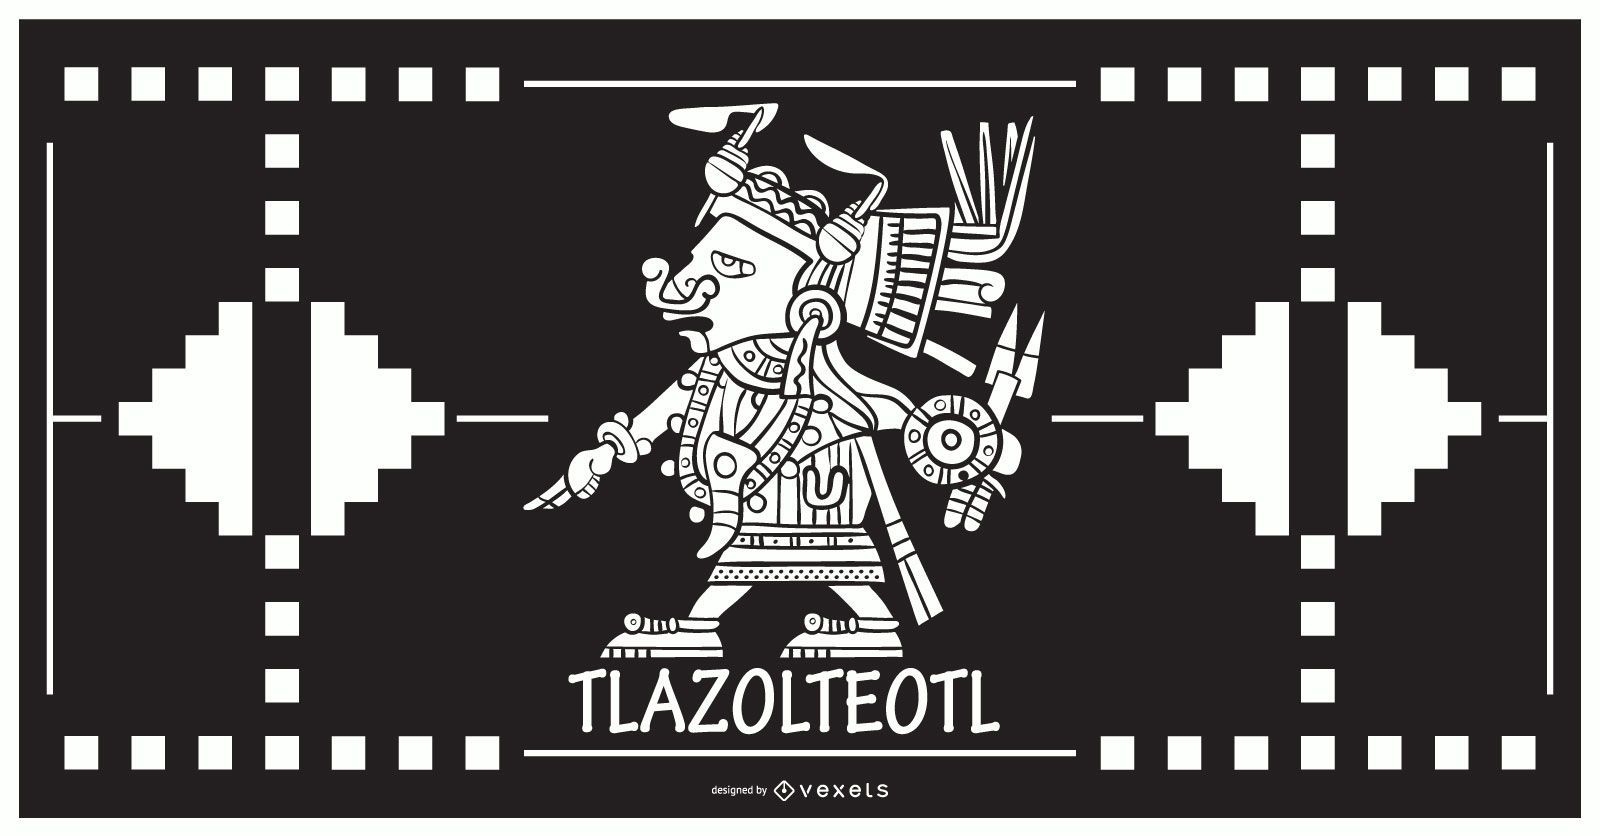 Tlazolteol aztekischer Gottentwurf